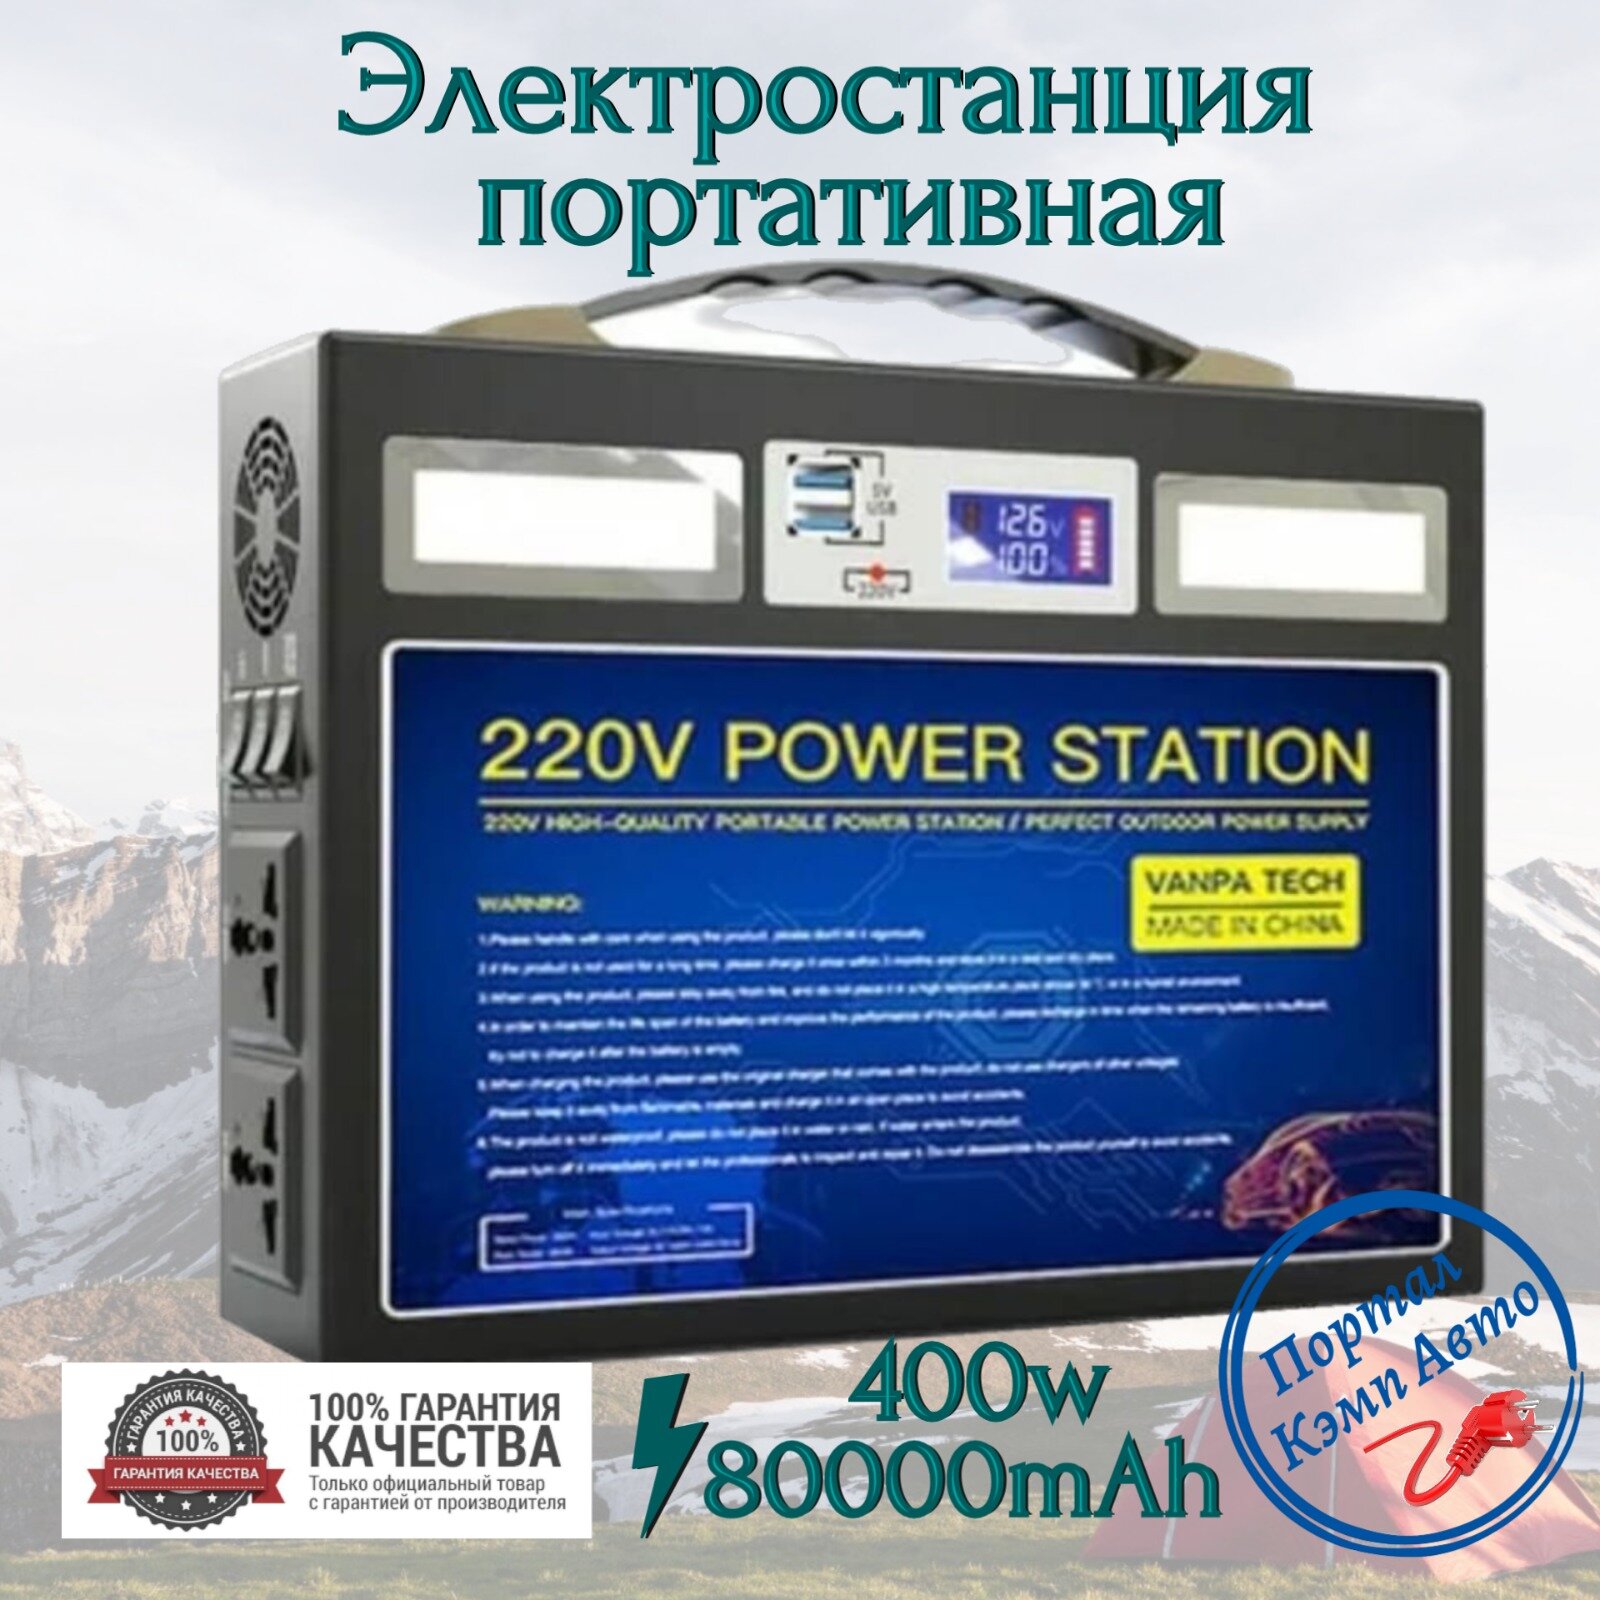 Портативная автономная электростанция VANPA 200Wh 400Вт. Аккумуляторная батарея